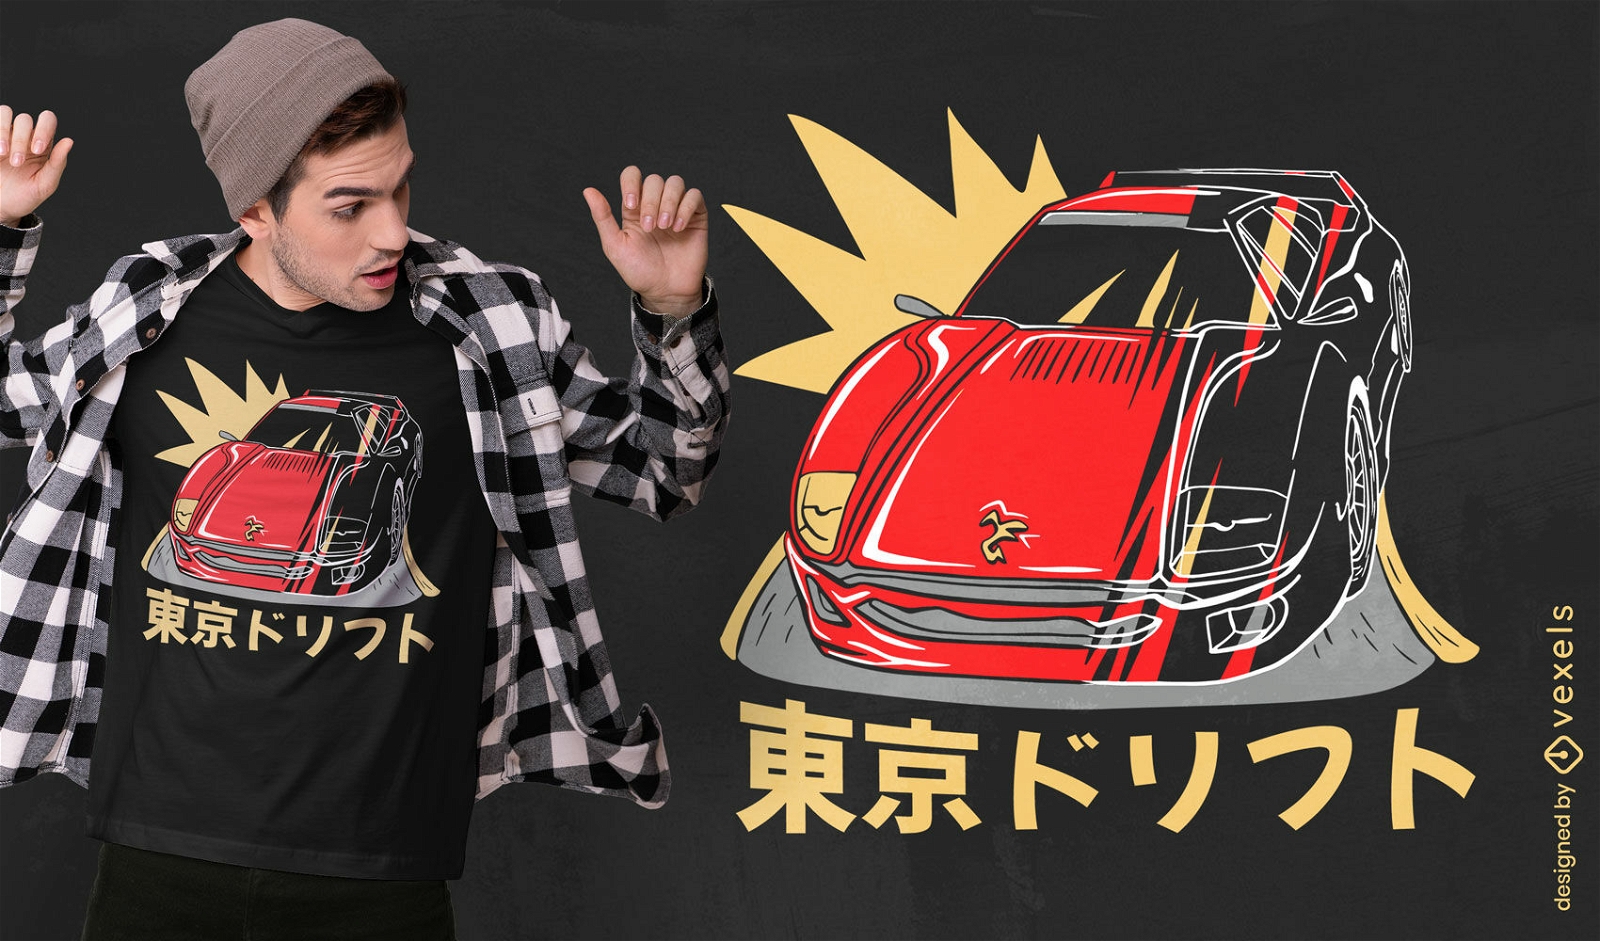 Japanisches Sportwagen- und Text-T-Shirt-Design